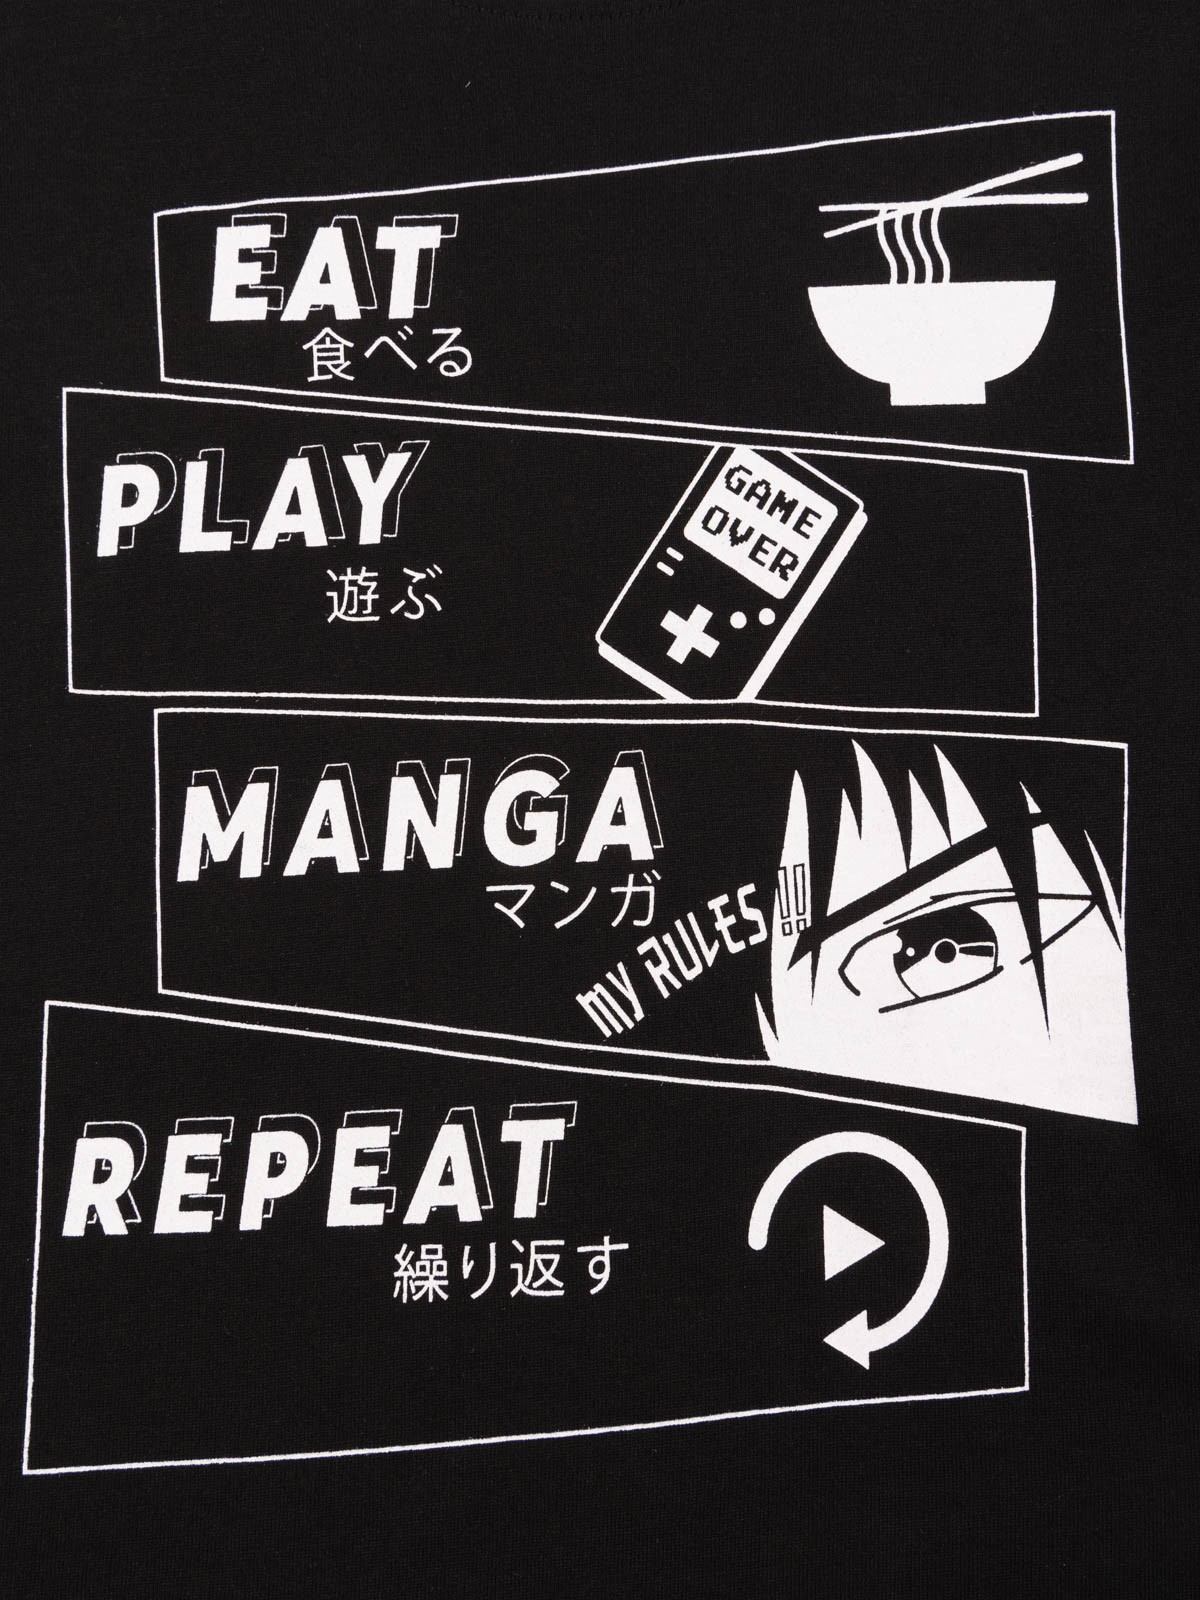 Anime Manga Garçon' T-shirt Ado